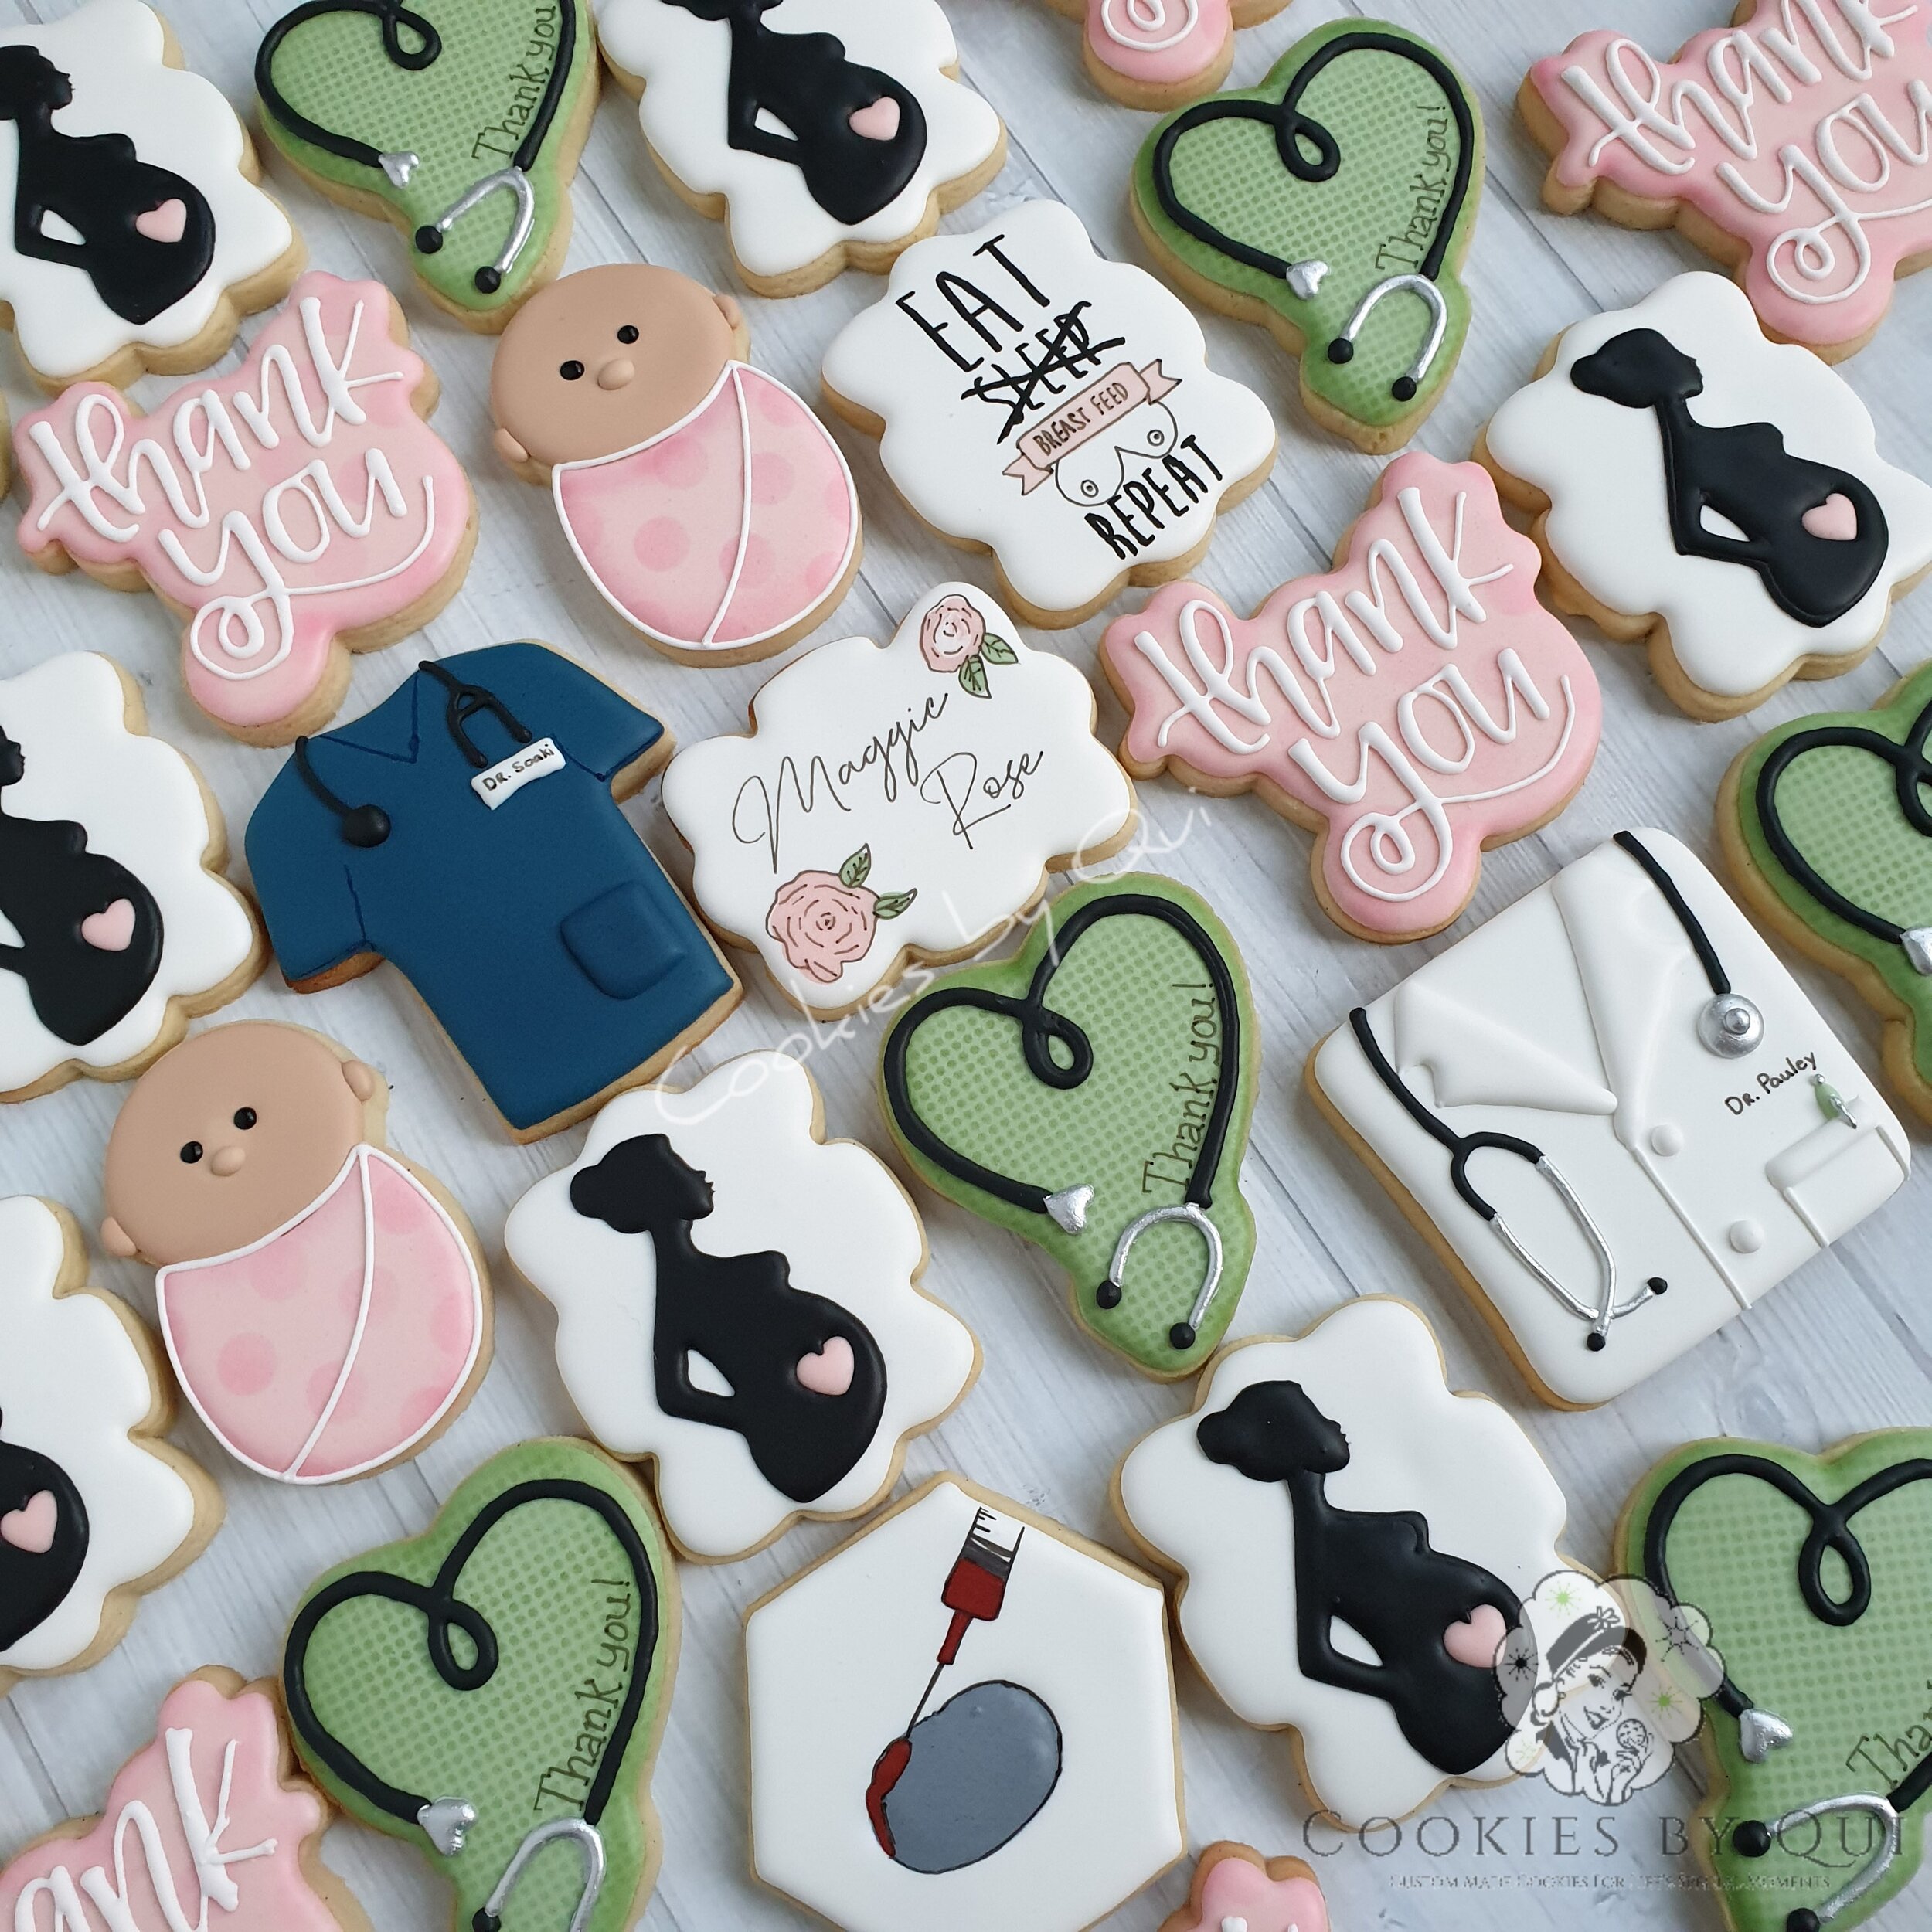 Thank You Nurse Baby Cookies - Cookies by Qui Geelong.jpg